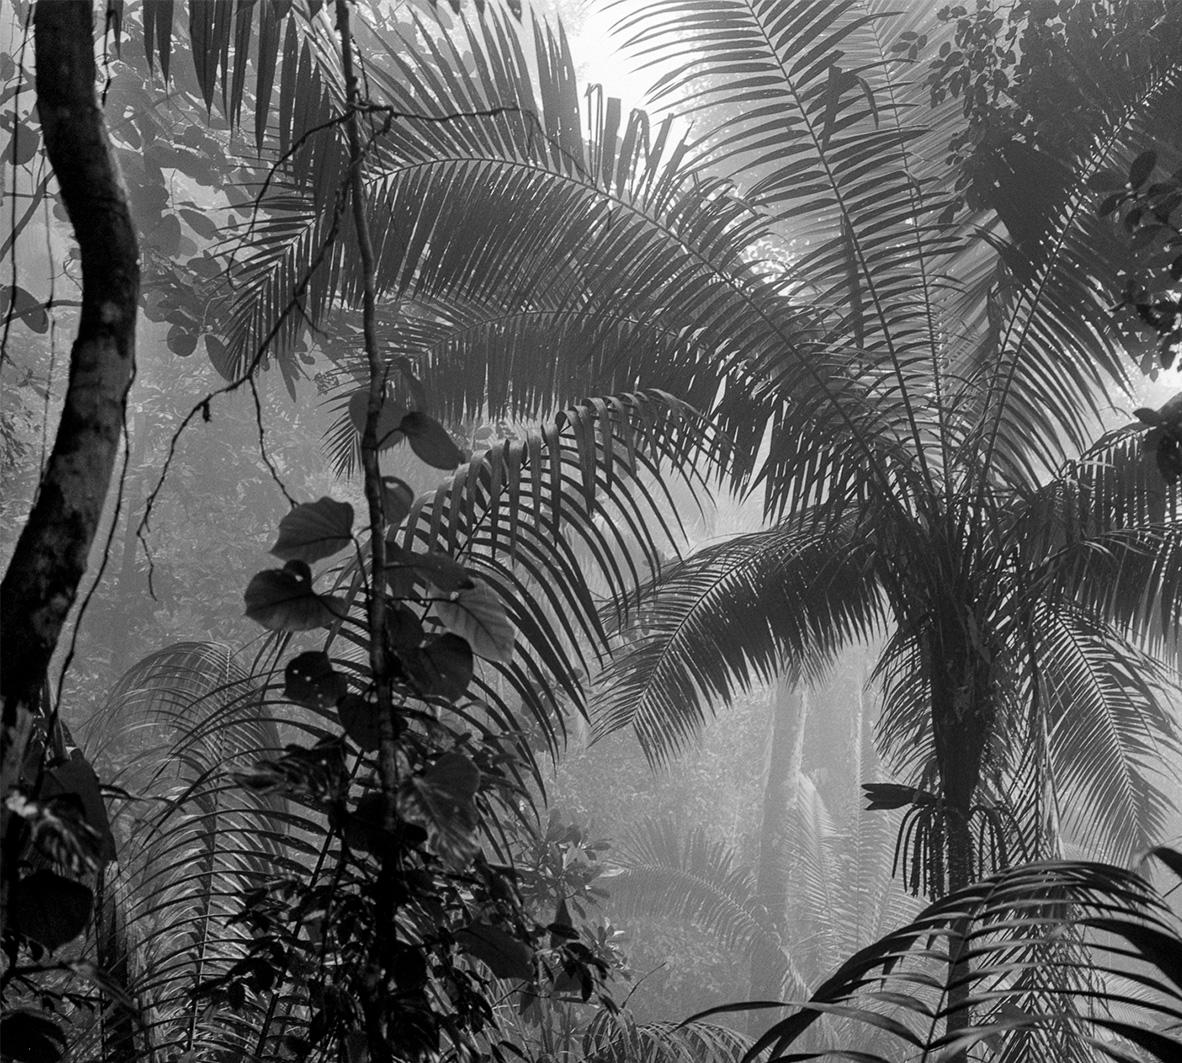 Bosque Húmedo Tropical II Nuqui, 2021 par Miguel Winograd 
De la série Bosques
Impressions pigmentaires
Taille : 36 in H x 43 in W 
Edition de 5 + 2AP

Édition noir et blanc
Non encadré 

____________________________

Miguel Winograd est un